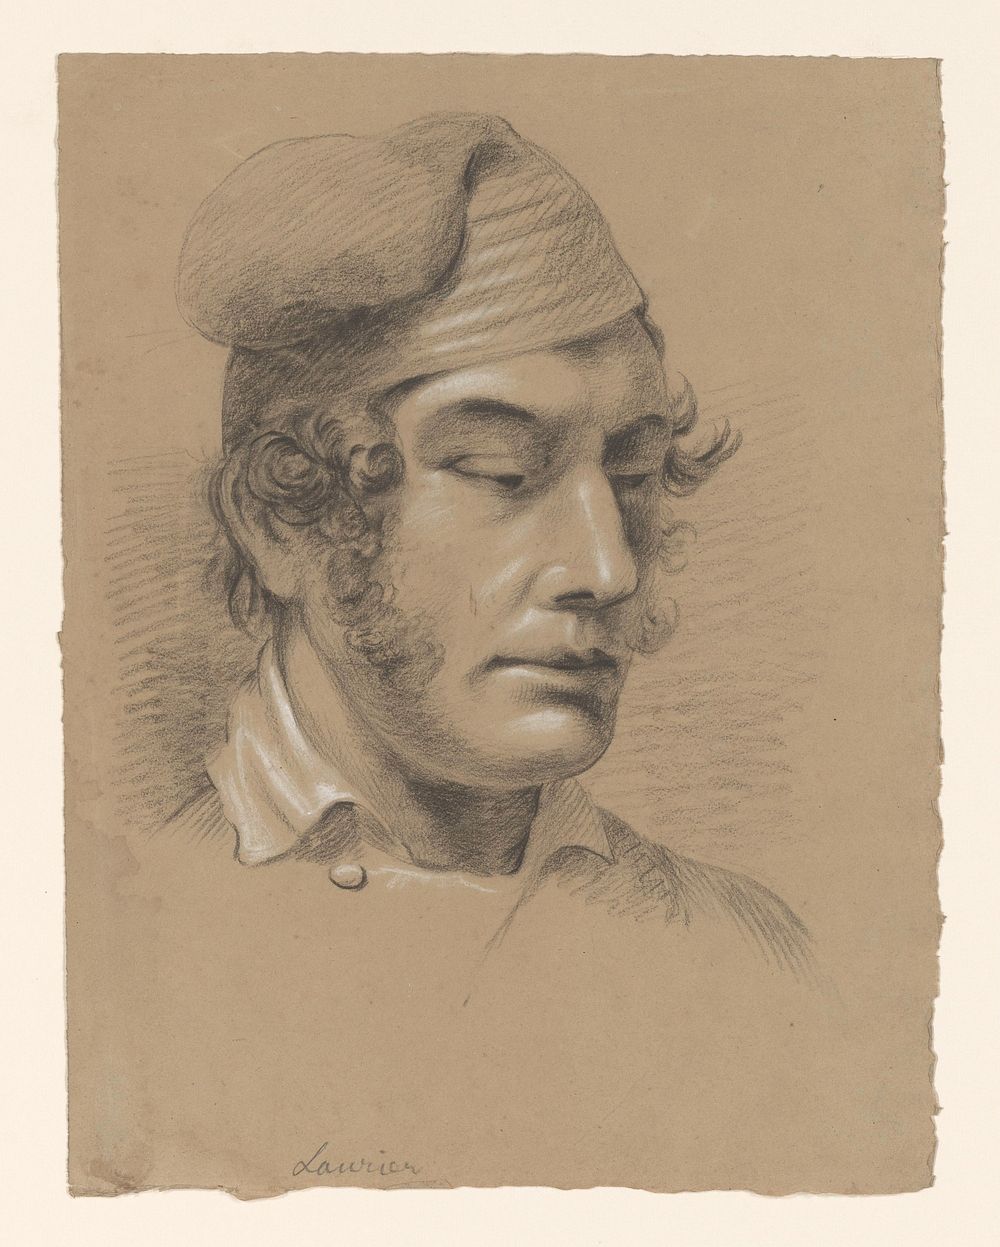 Hoofd van een man, naar rechts (1809 - 1869) by Alexander Cranendoncq